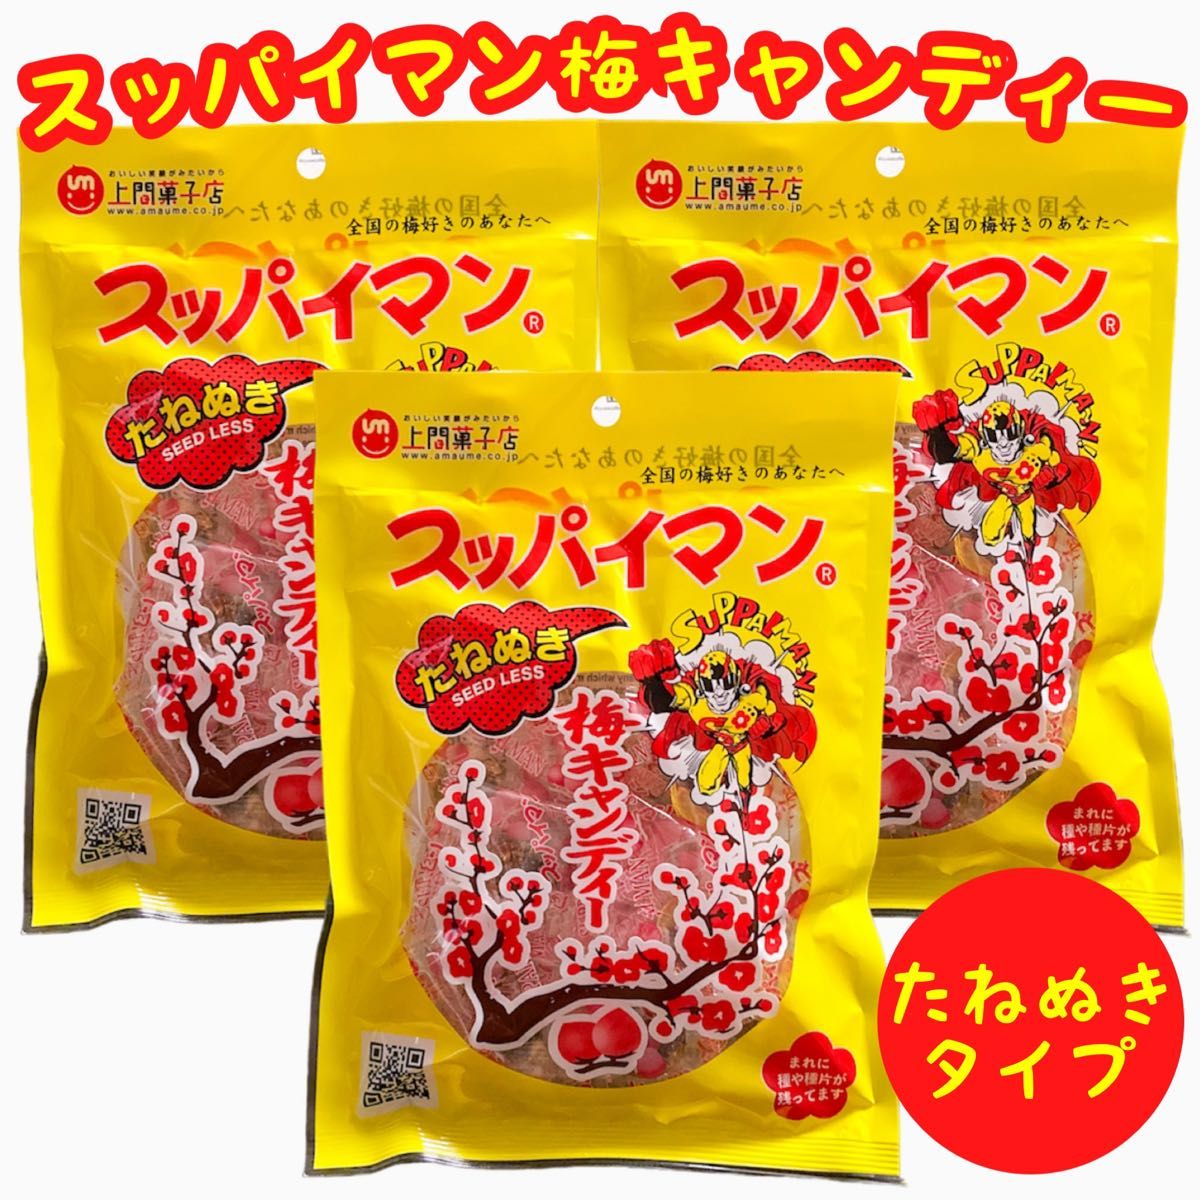 【人気商品】沖縄梅菓子 スッパイマン梅キャンディー(たねぬきタイプ)  ３袋セット  おやつ お茶菓子 お買得 梅干し飴